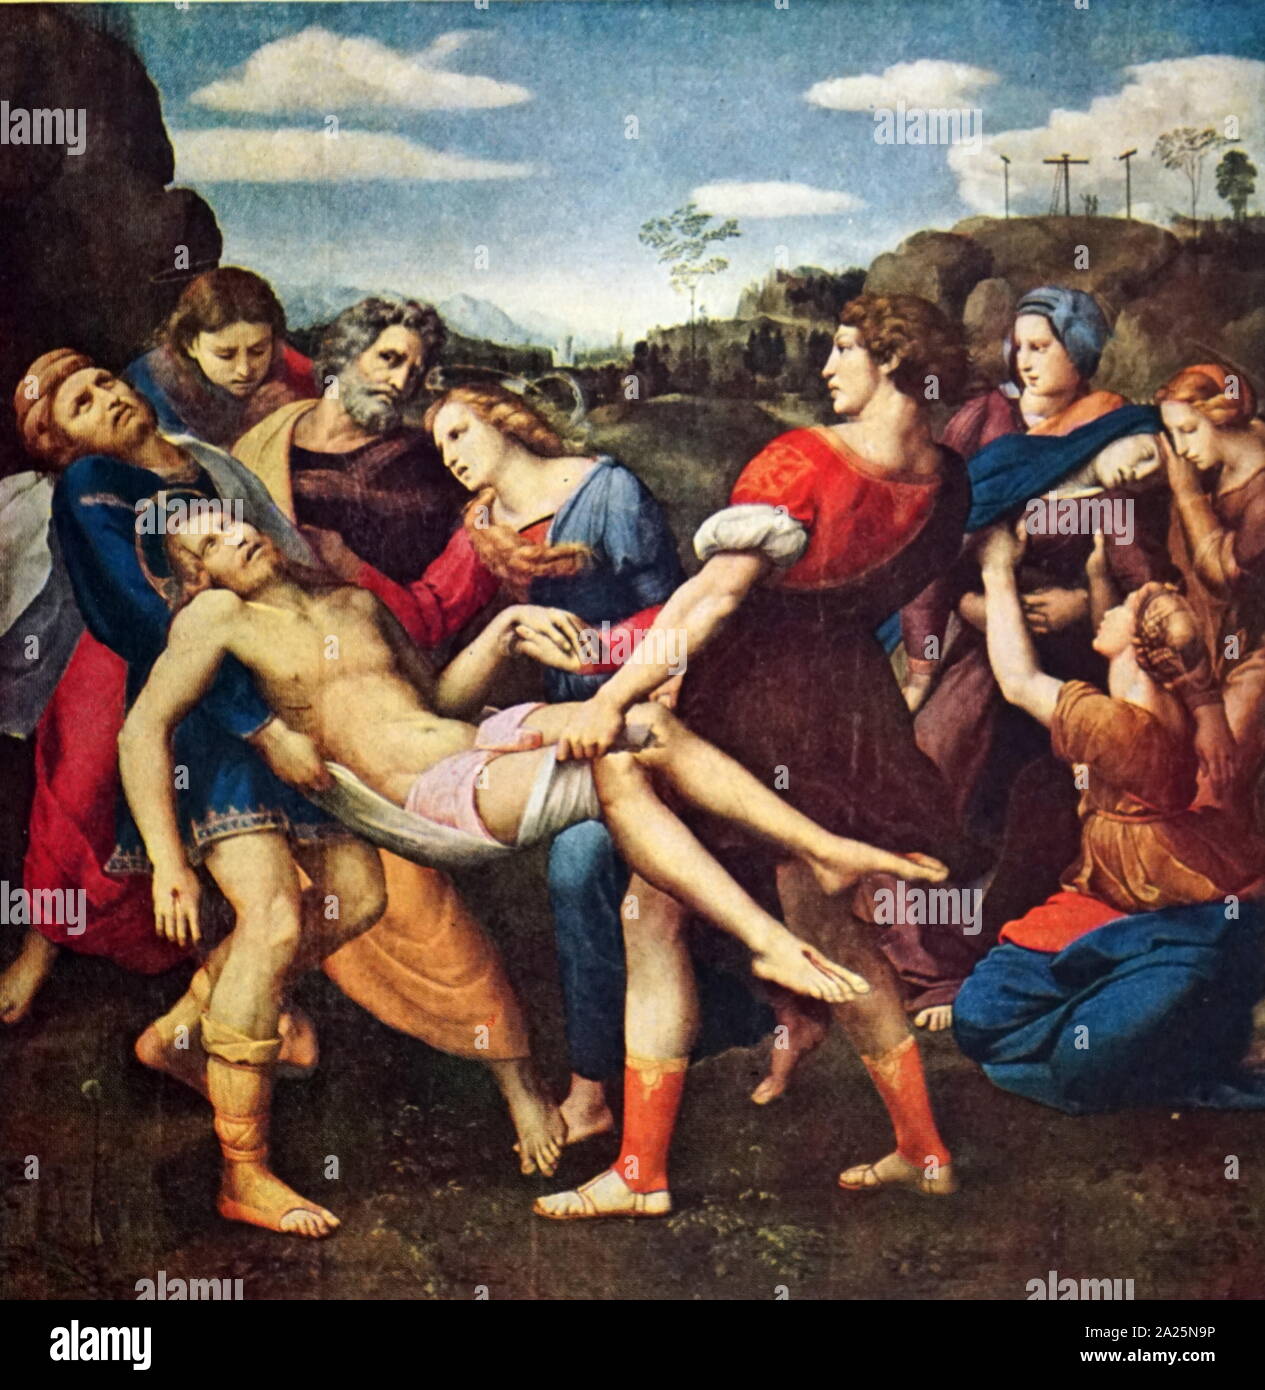 La peinture intitulée "La Déposition" par Raphaël. Raffaello Sanzio da Urbino (1483-1520) un peintre et architecte italien. Banque D'Images